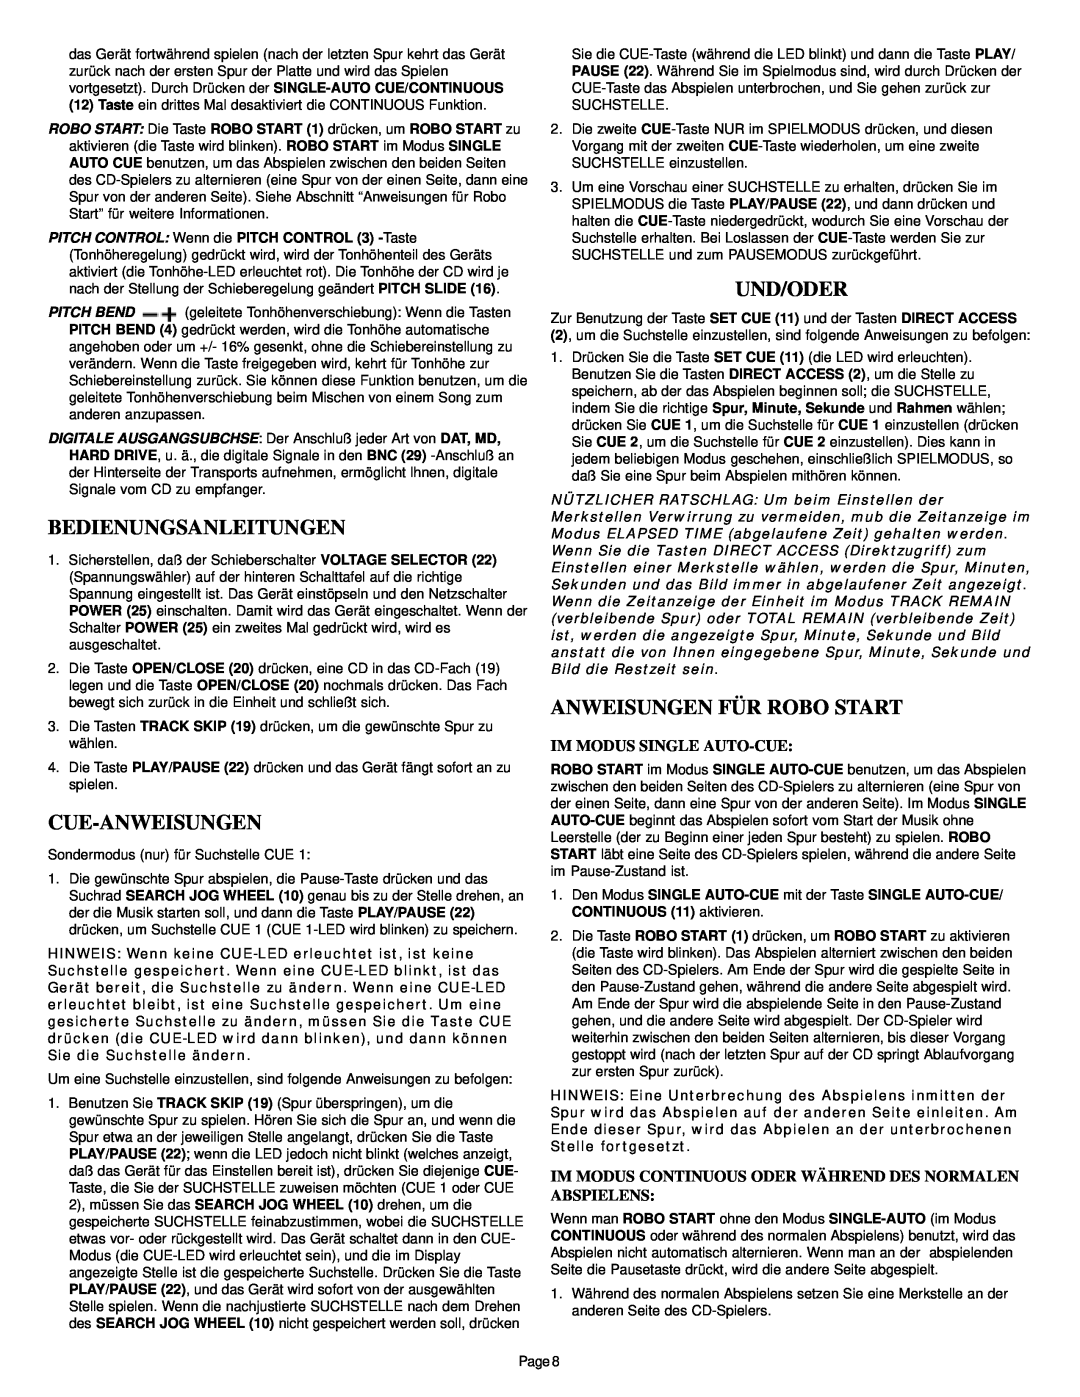 Gemini CDS-2000 Bedienungsanleitungen, Cue-Anweisungen, Und/Oder, Anweisungen Für Robo Start, Im Modus Single Auto-Cue 